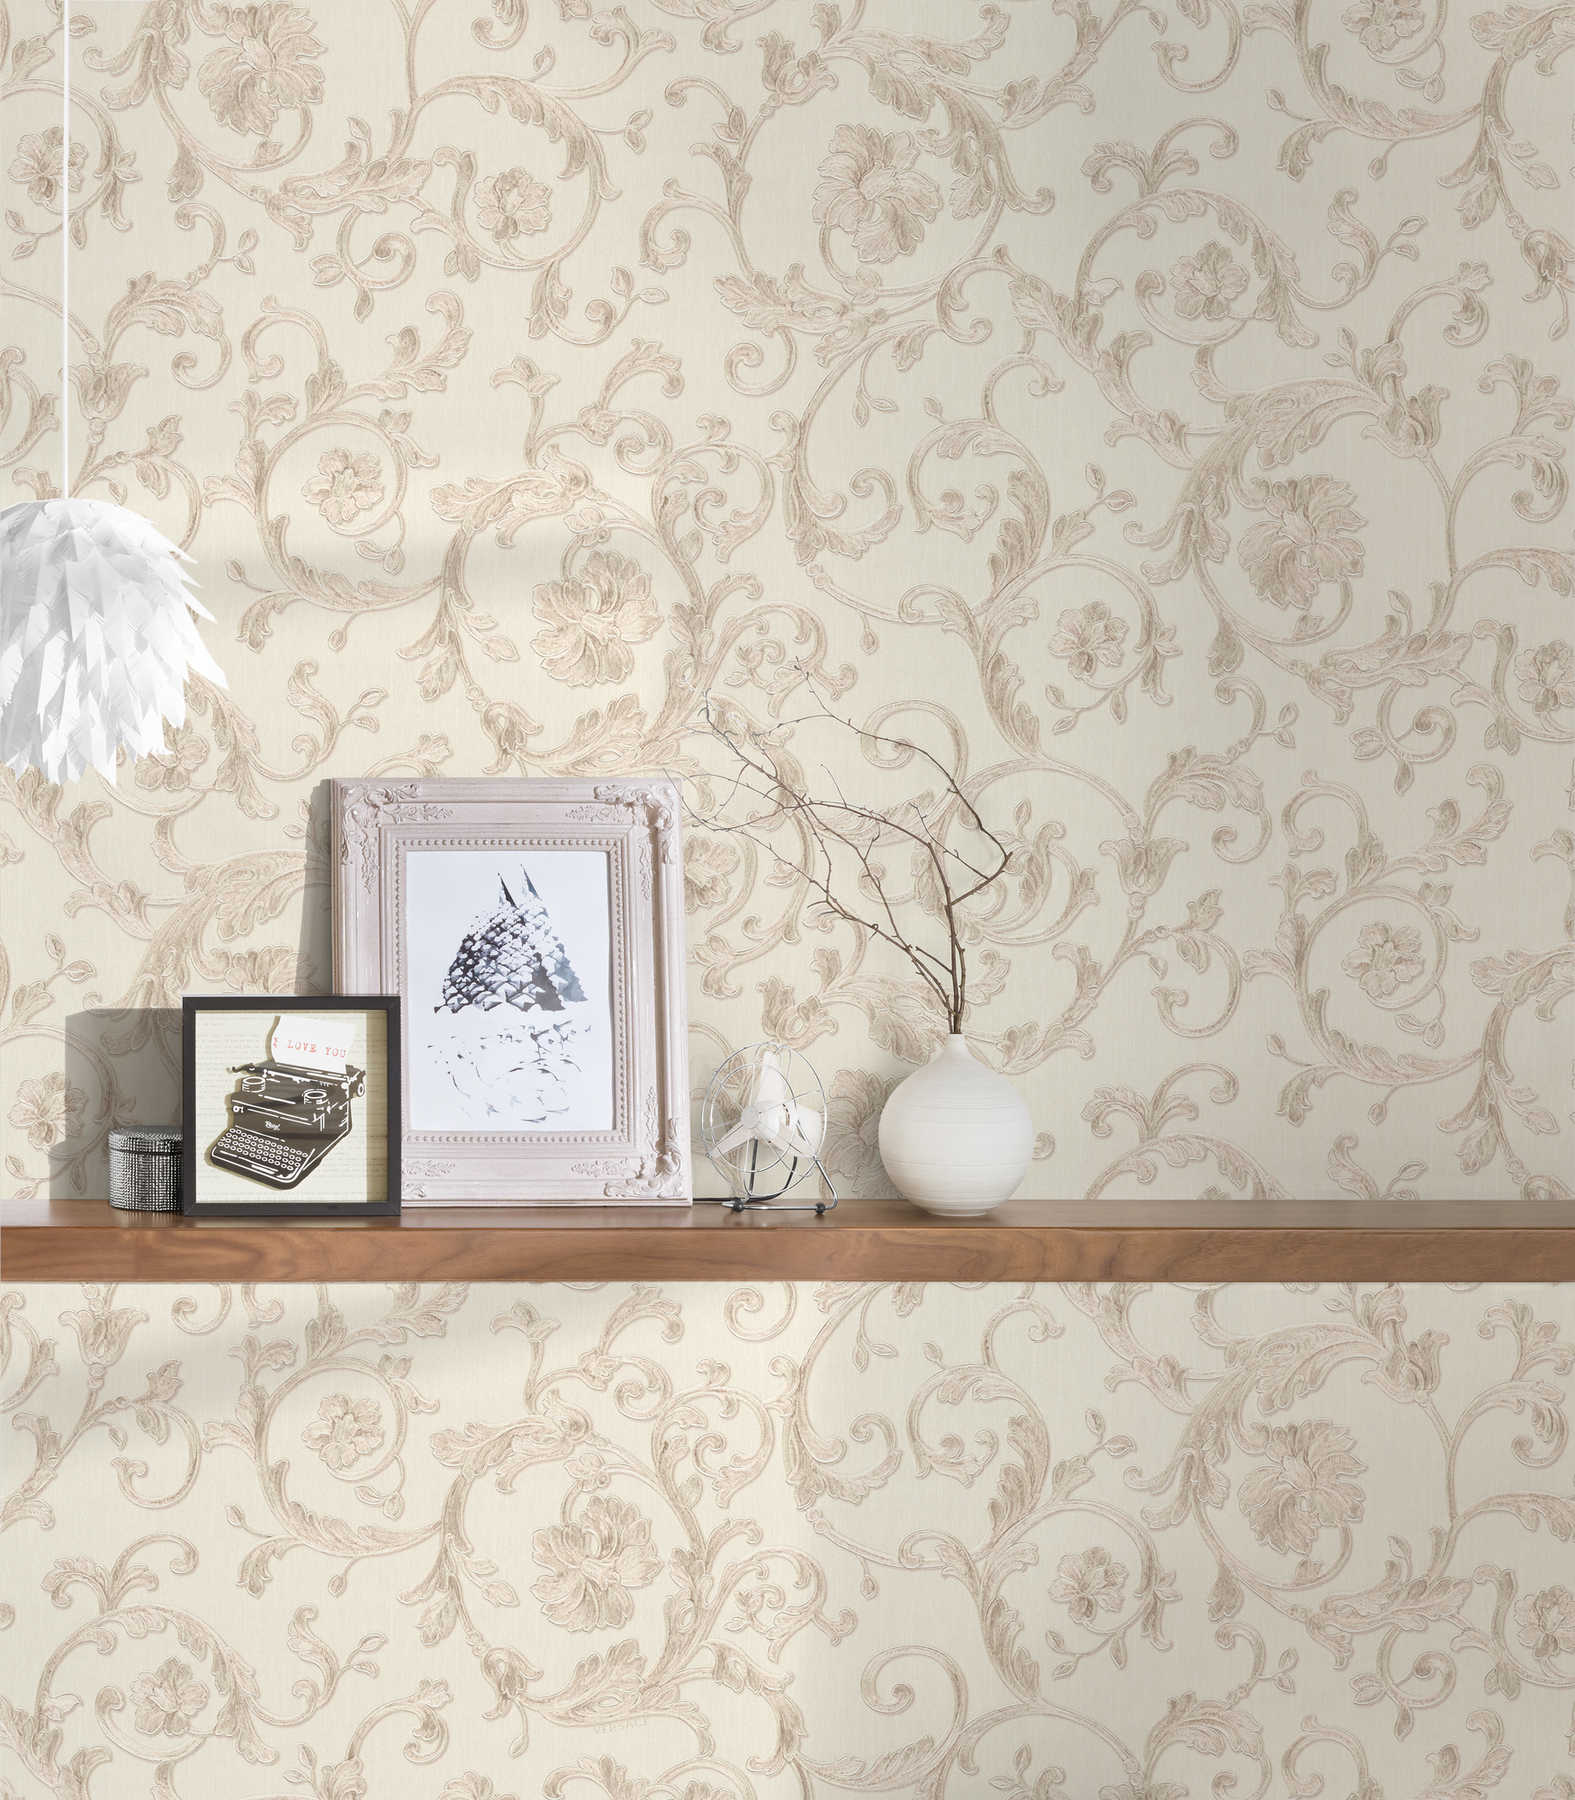             VERSACE wallpaper with metallic vines & flowers - cream
        